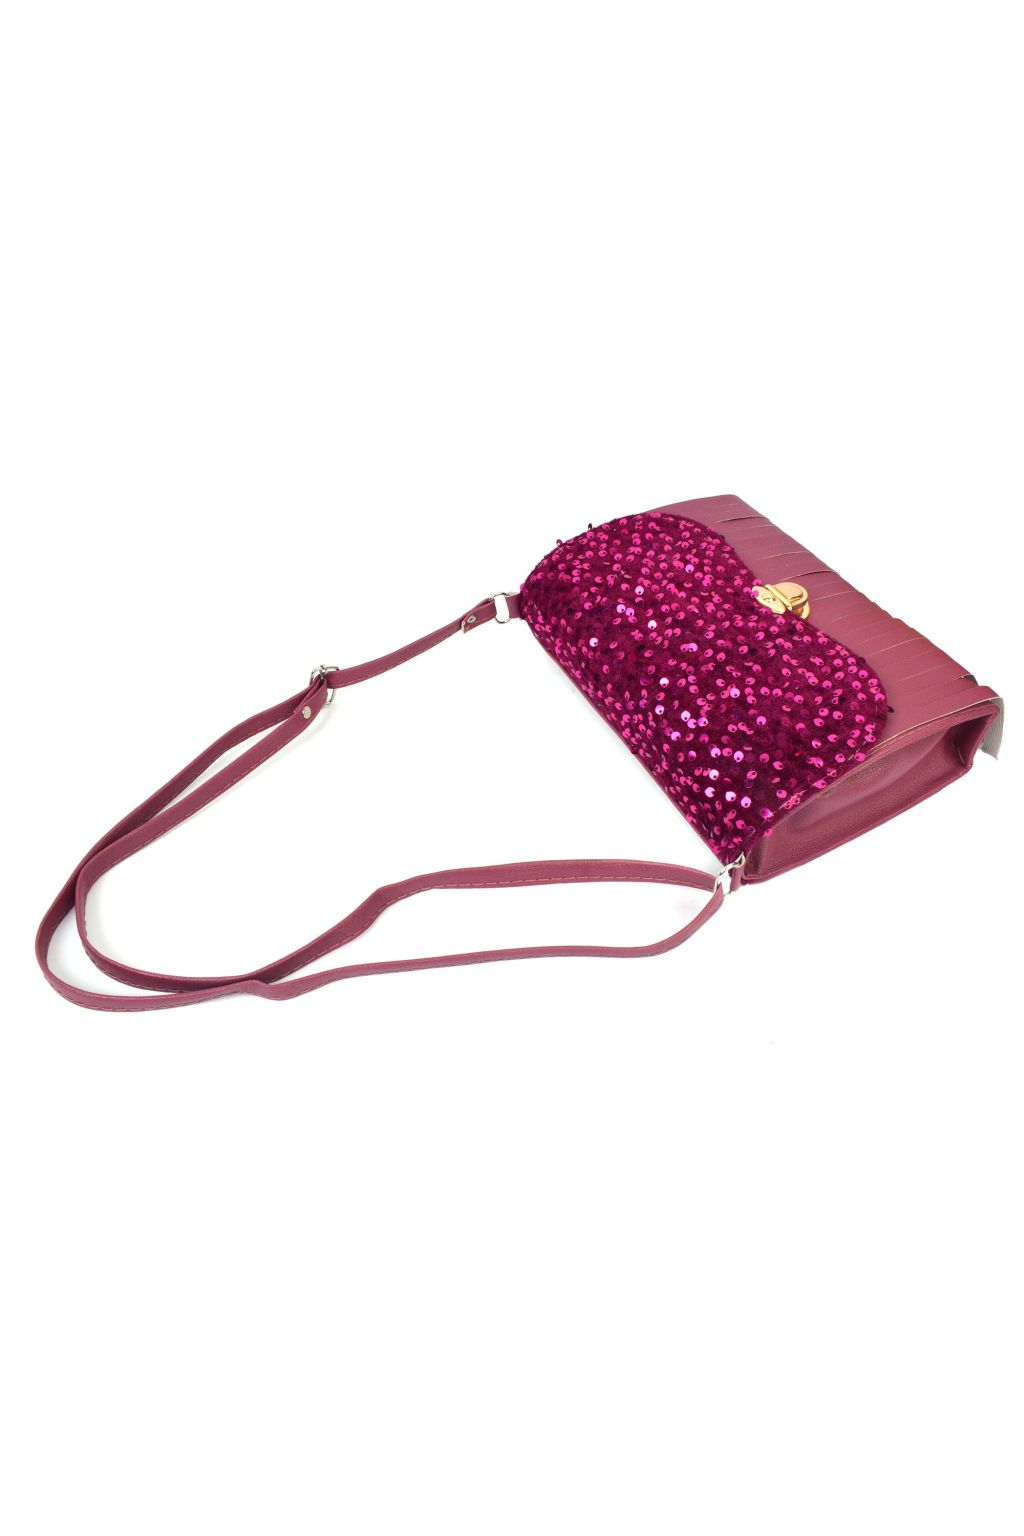 Suzy Smith London Pink snake skin effect Hand Bag / Shoulder Bag / Purse |  eBay